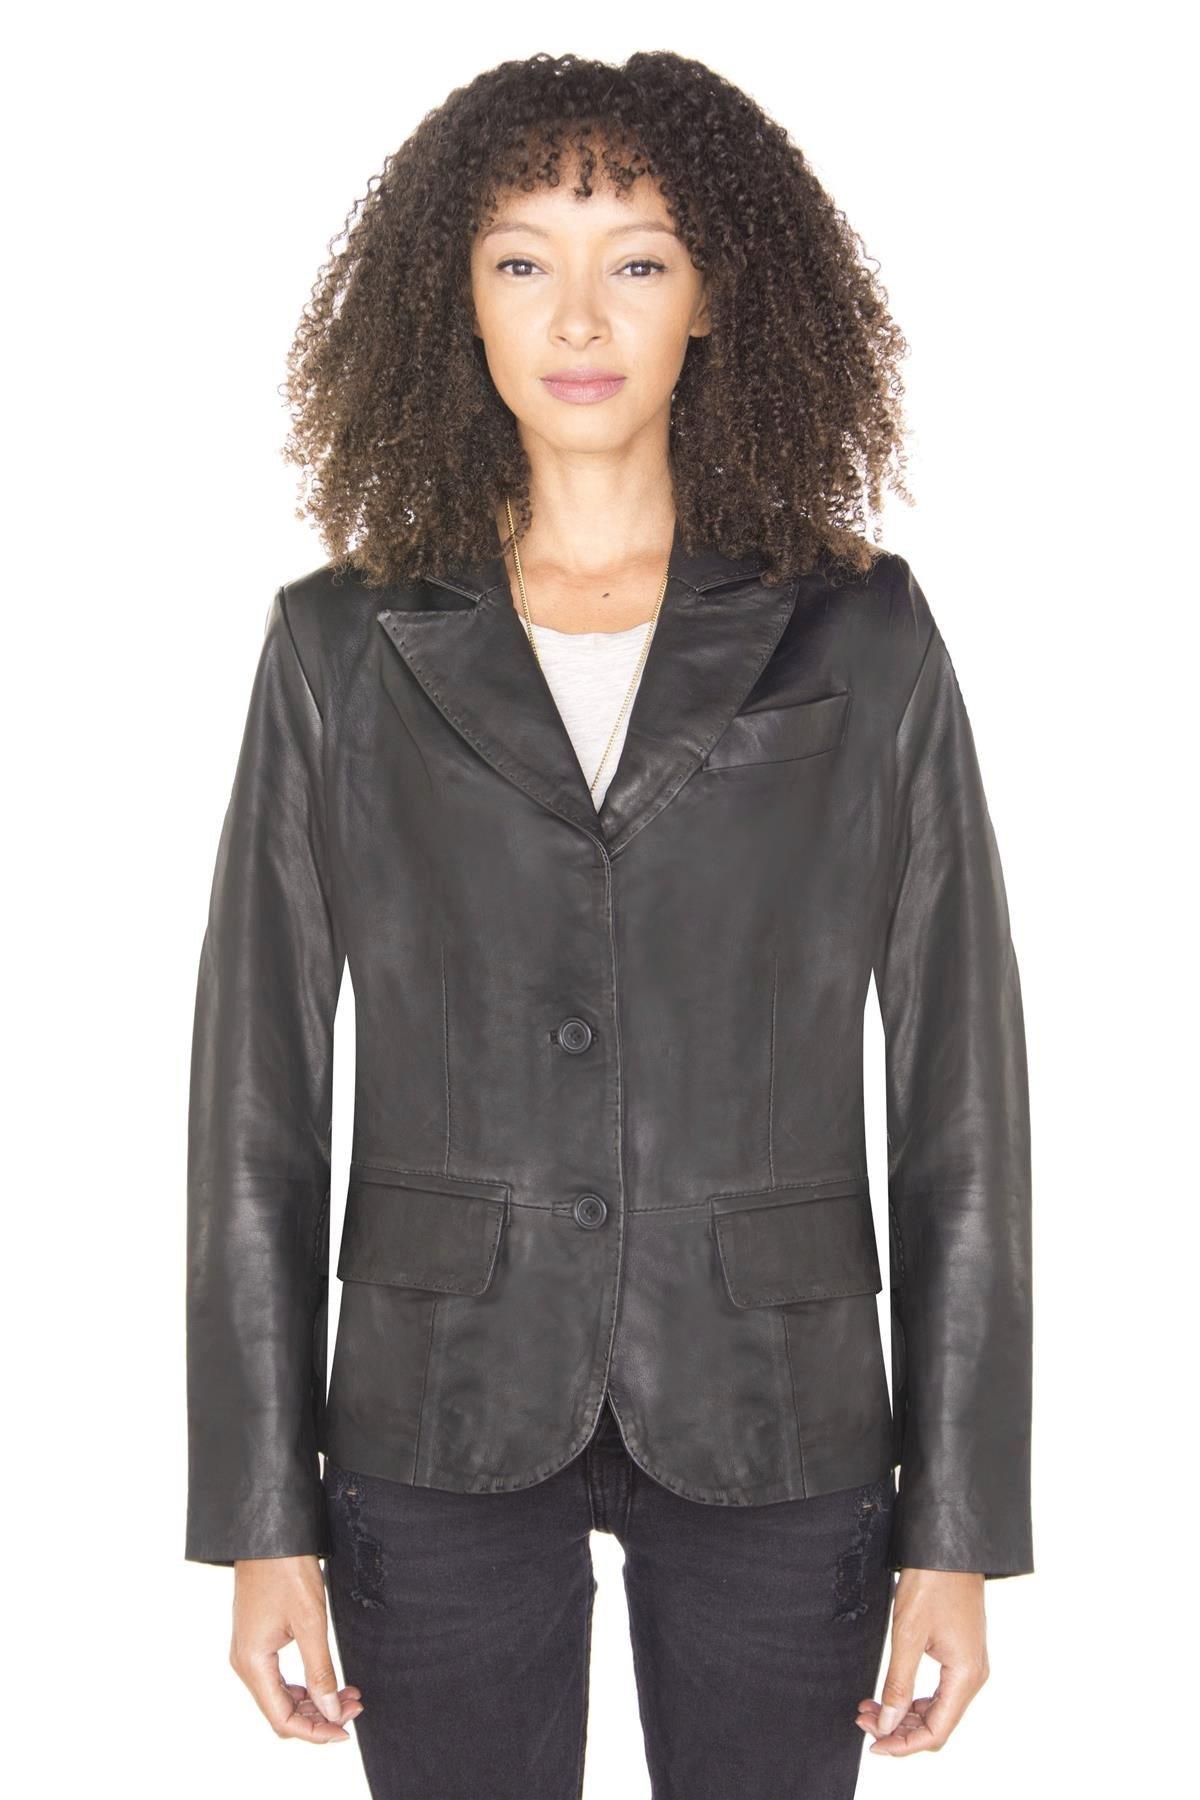 цена Кожаный пиджак-Seregno Infinity Leather, черный